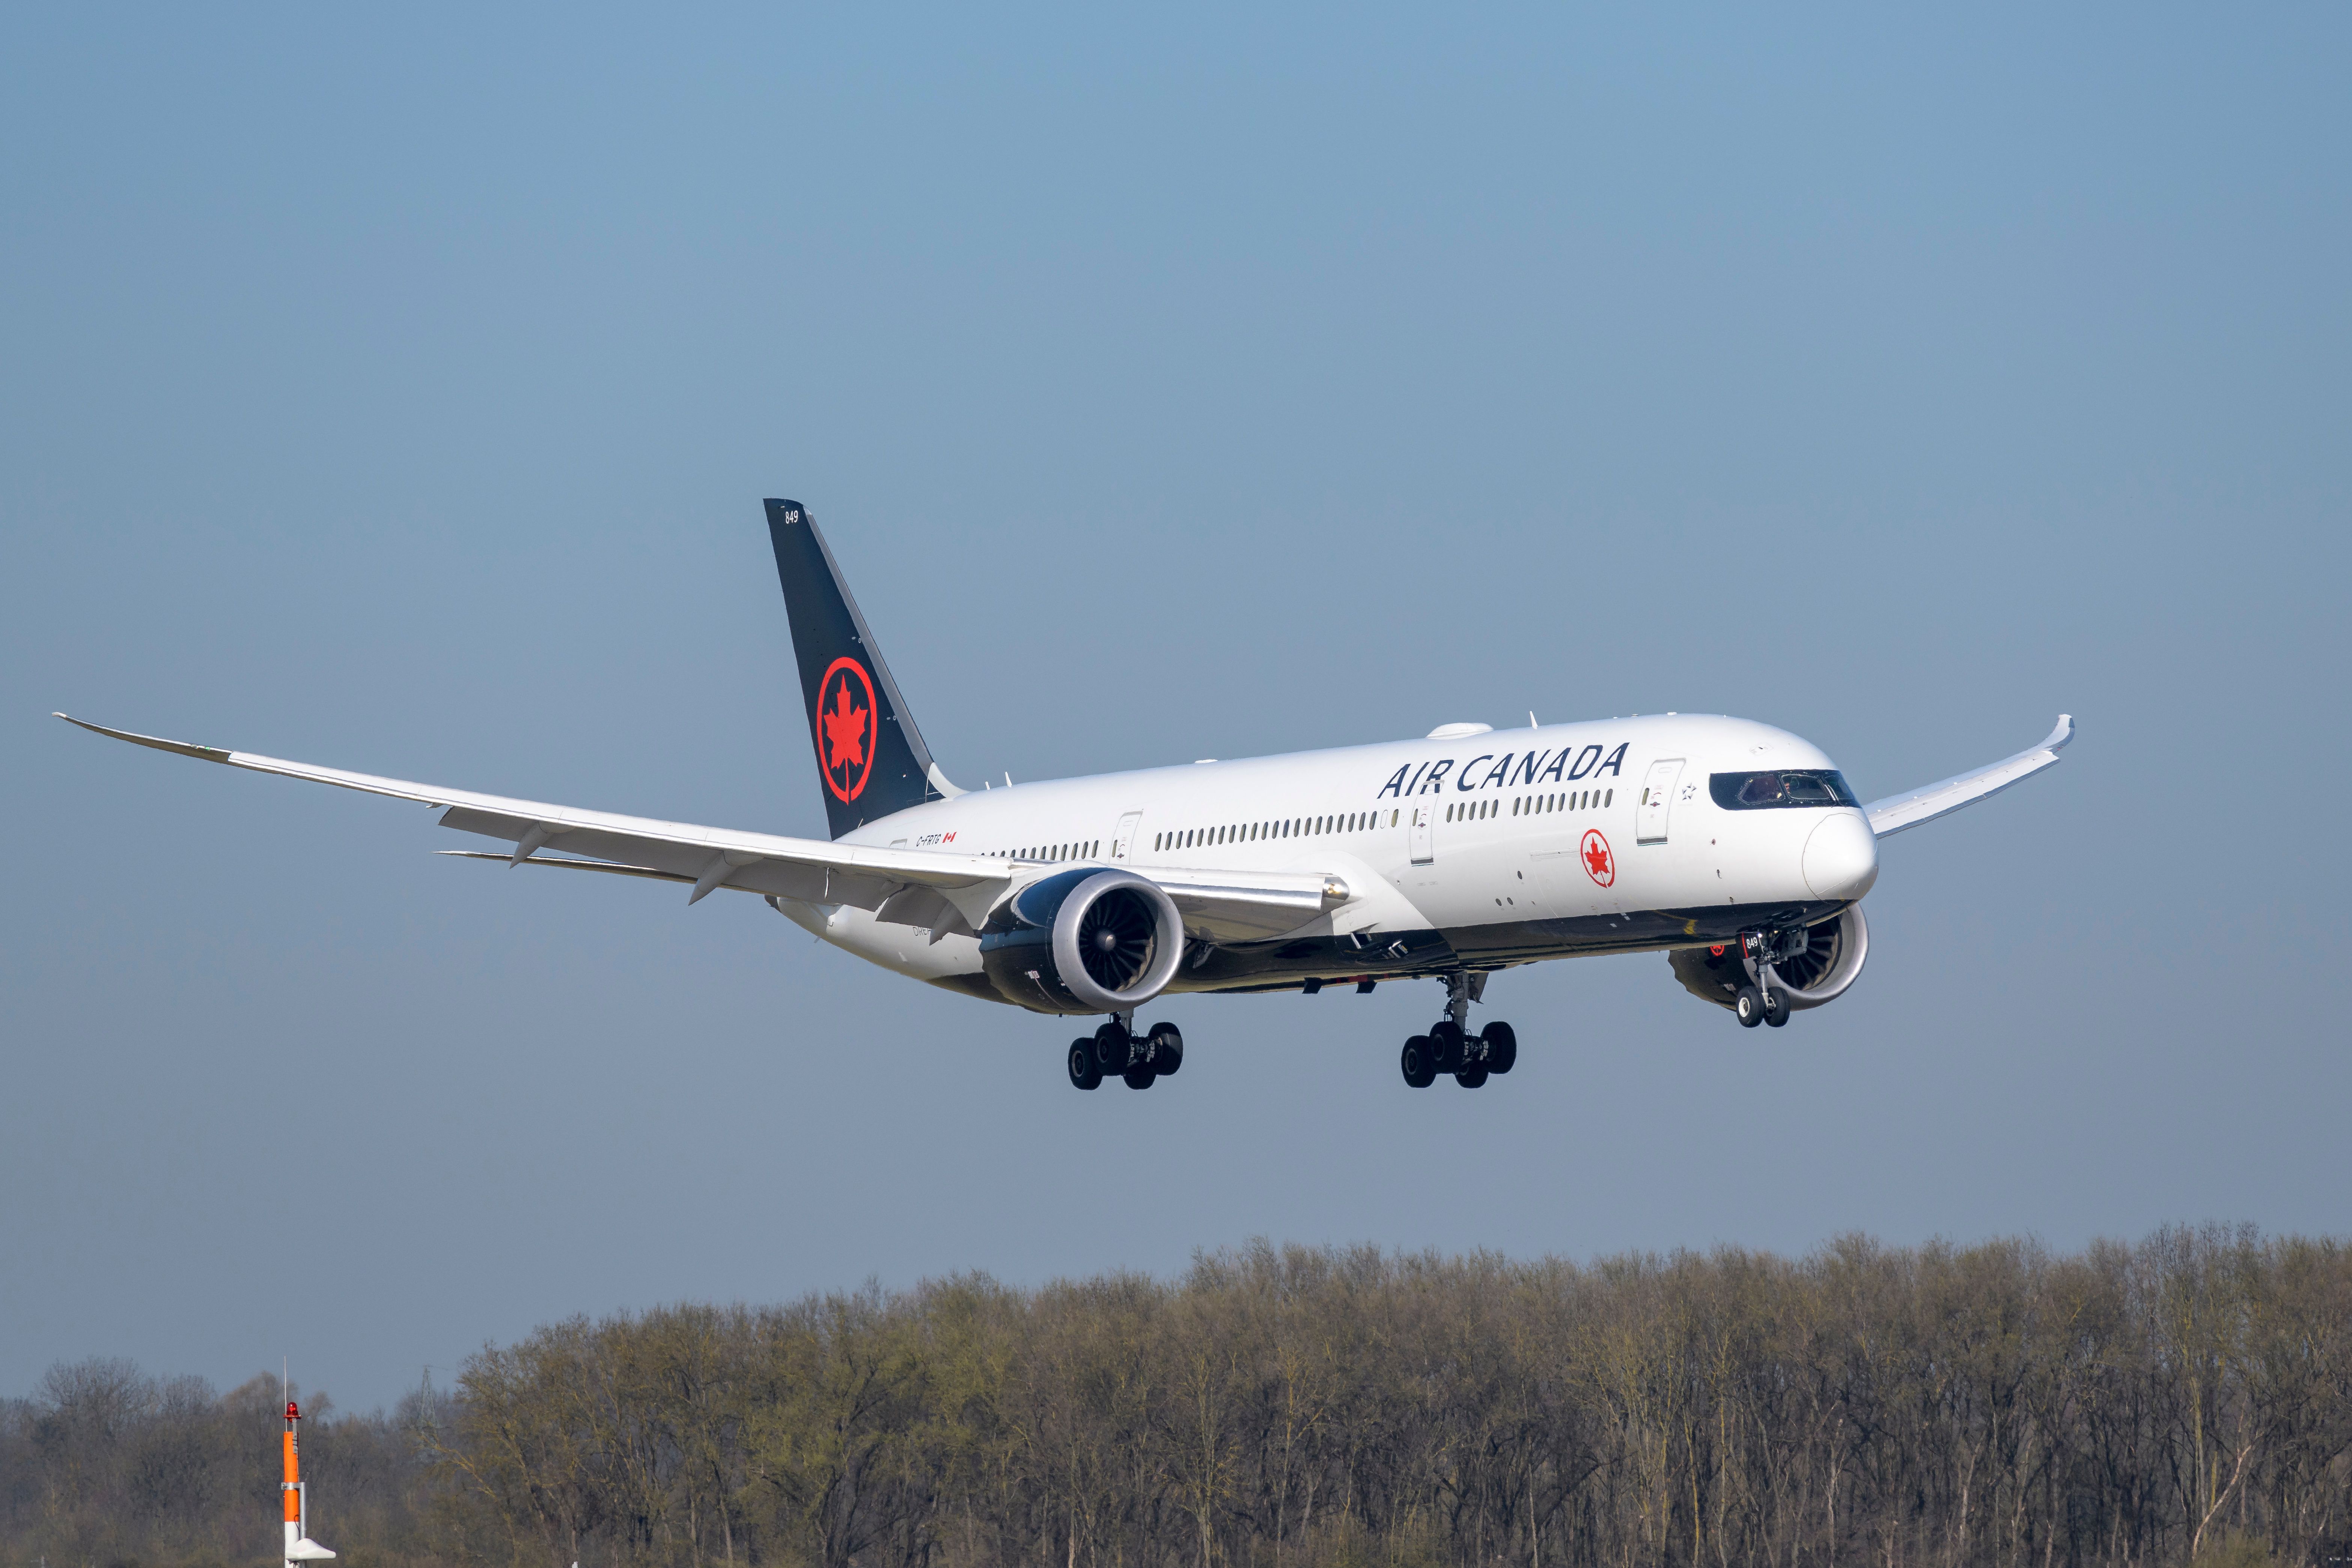 Air Canada Boeing 787 landing at Munich Airport MUC